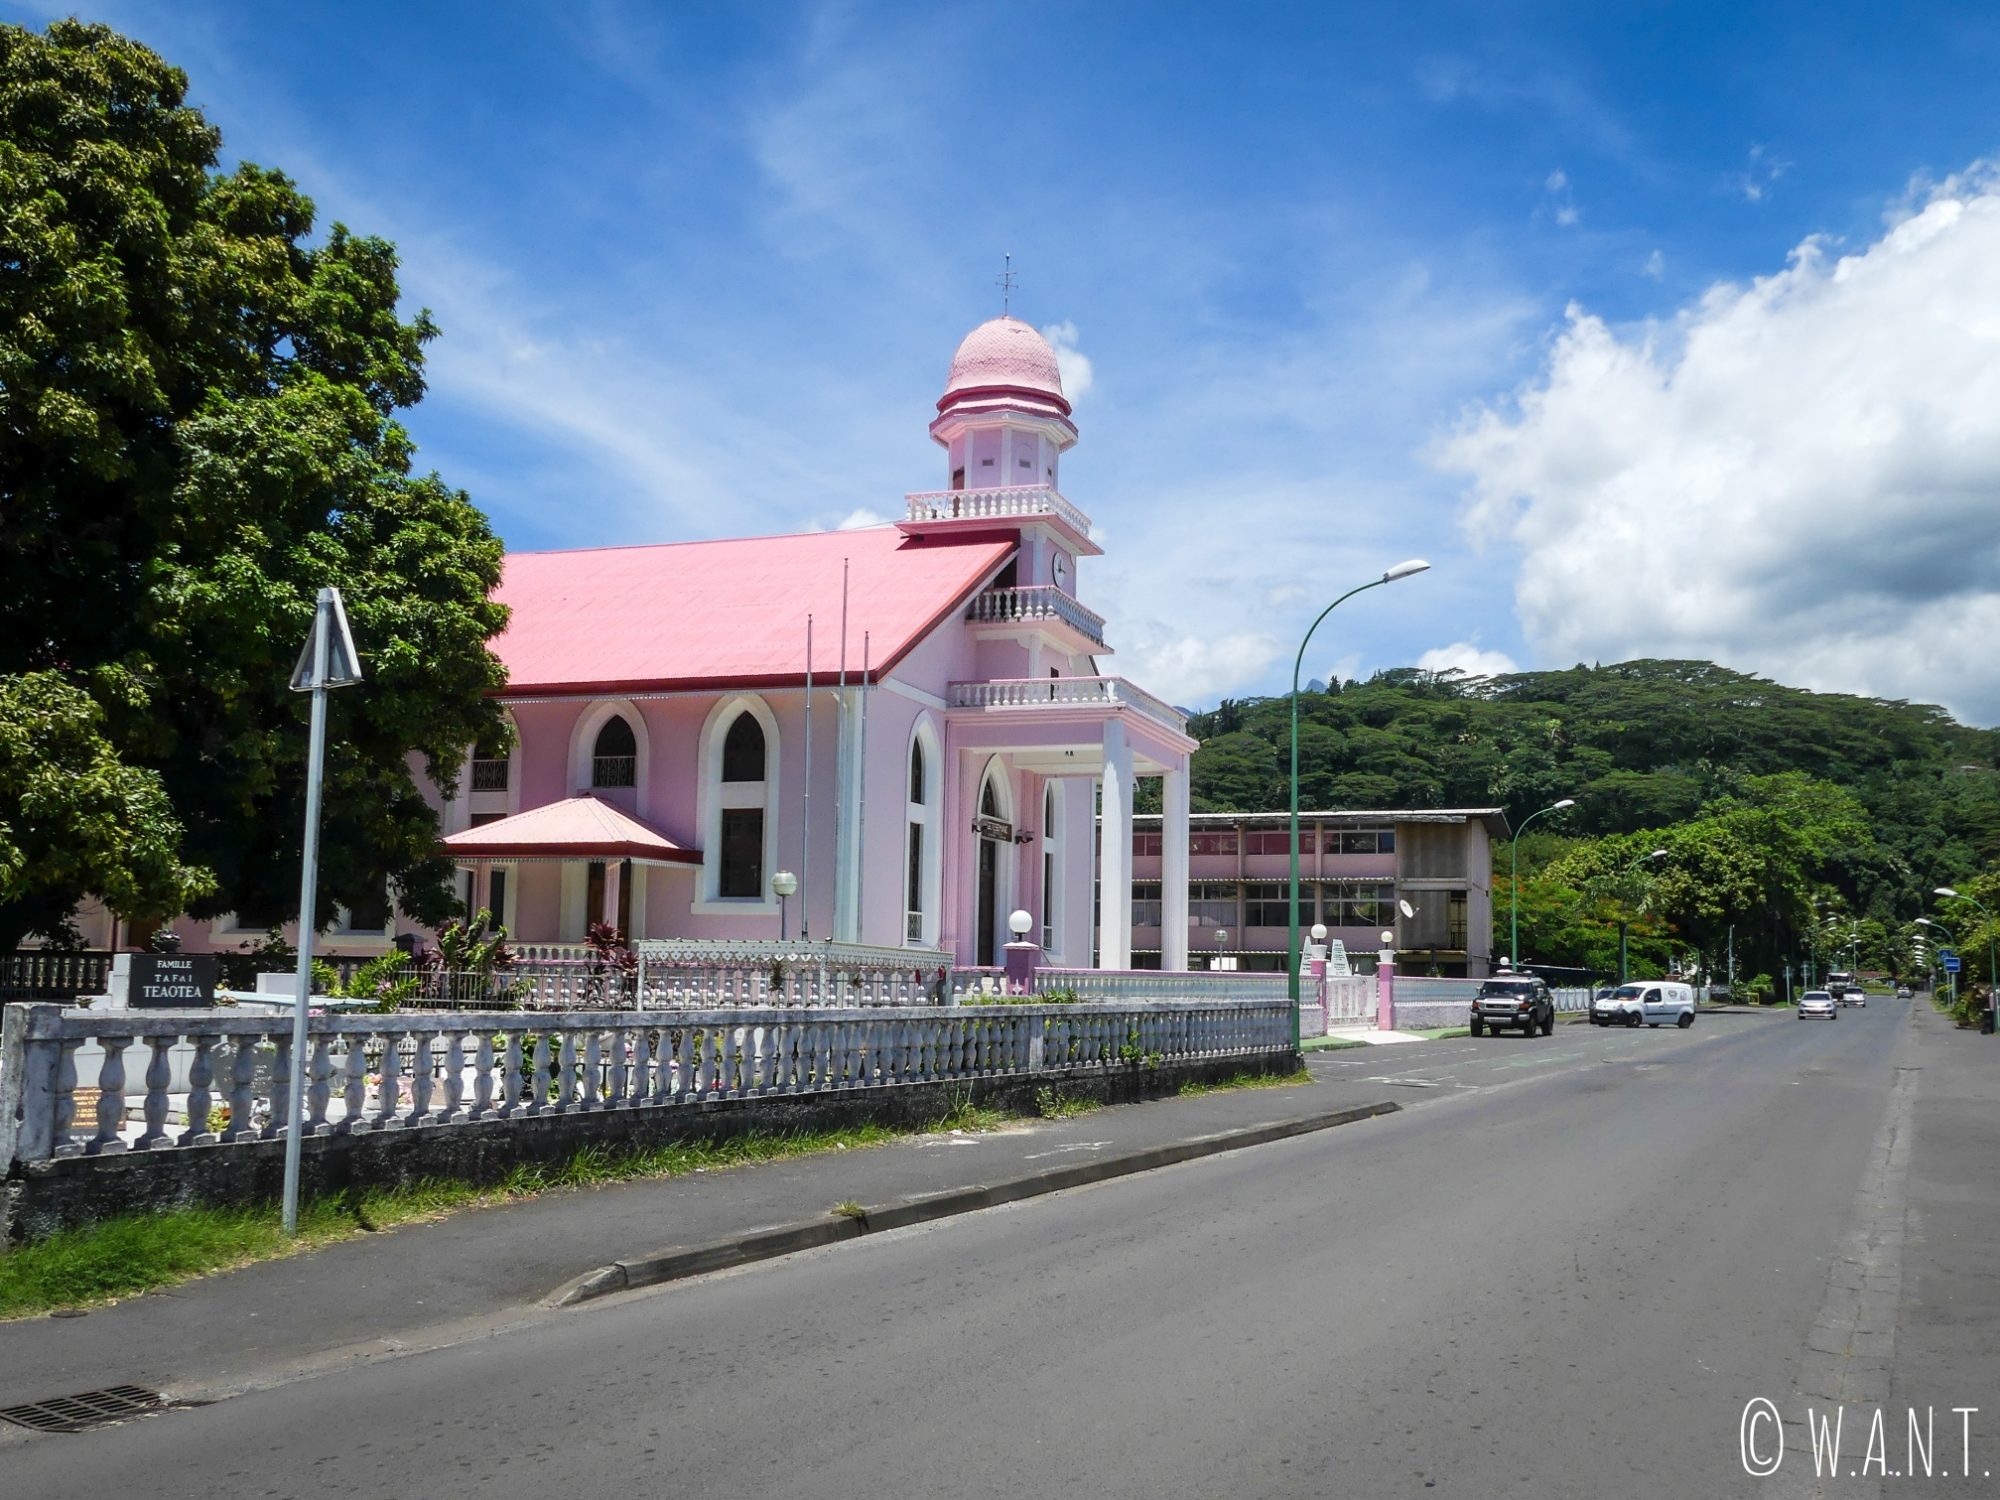 Nombreuses sont les églises sur l'île de Tahiti